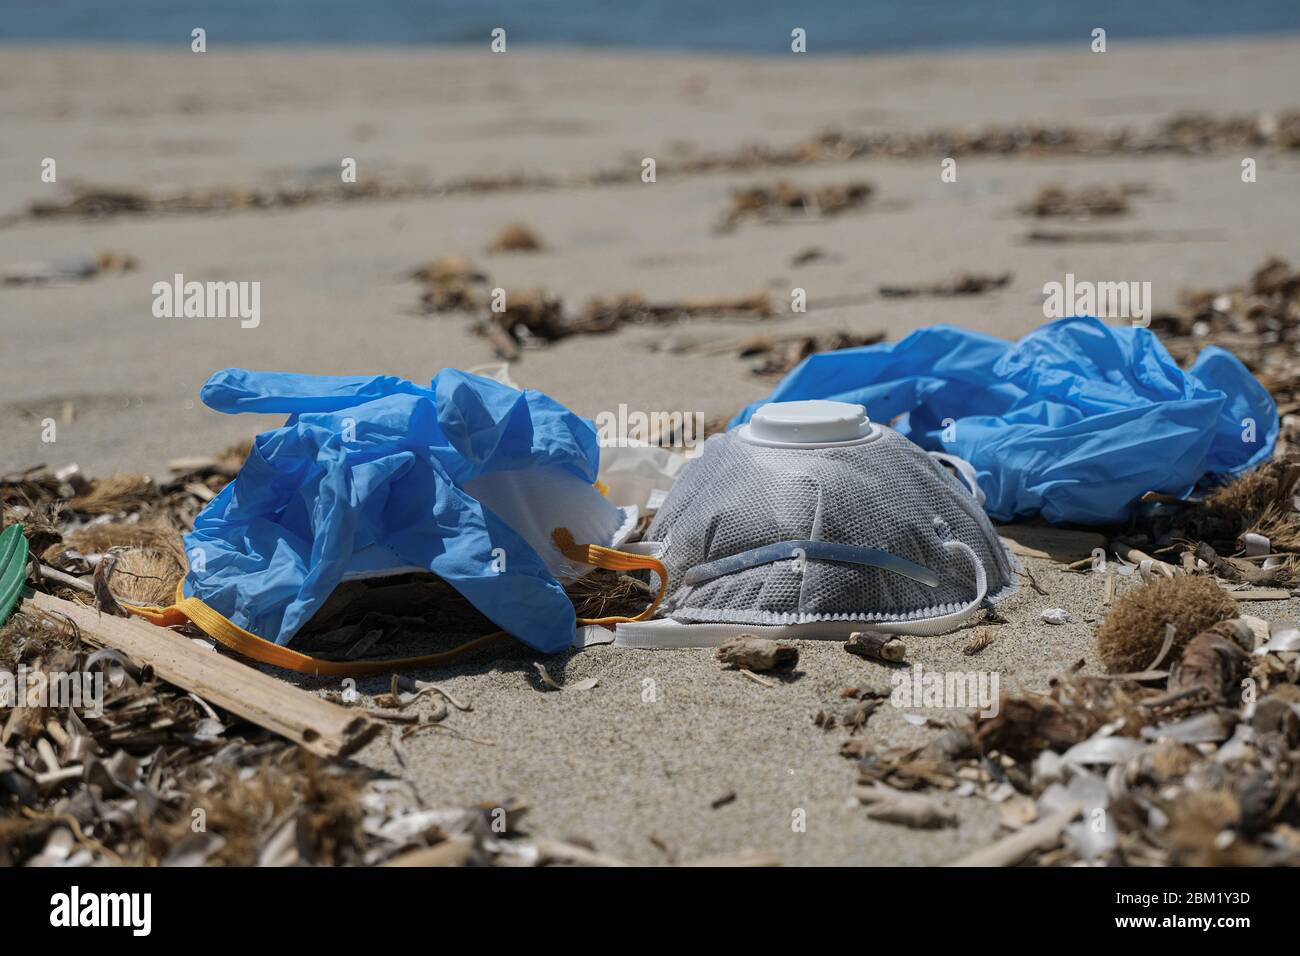 Maschera anti-virus protettiva FFP e guanti di plastica spazzatura sulla costa sabbiosa del mare, malattia da inquinamento da cocvidi coronavirus Foto Stock